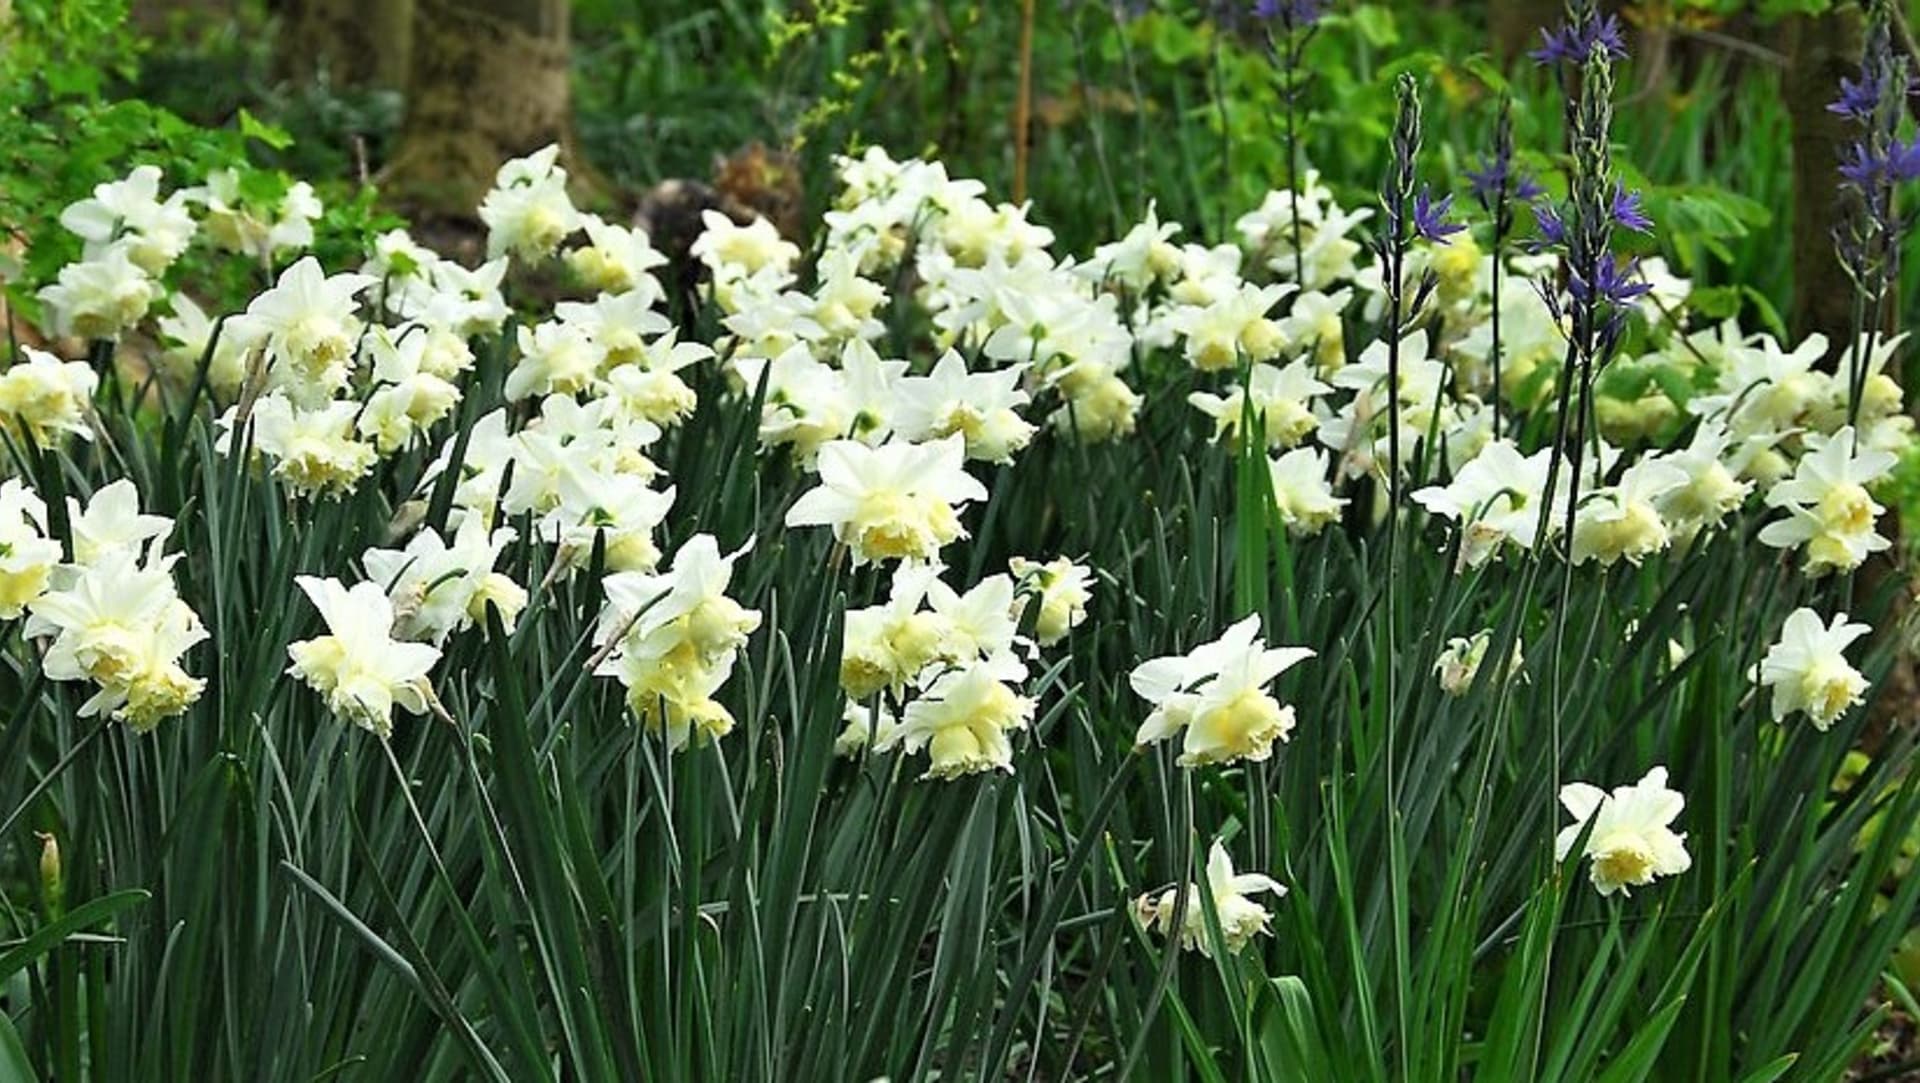 Narcisy (Narcissus) jsou na pěstování nenáročné a na jednom stanovišti je můžeme nechat více let Cibule vysazujeme na slunné až polostinné, dobře chráněné stanoviště. Větrné nebo vlhké počasí může způsobit zlomení stonků.